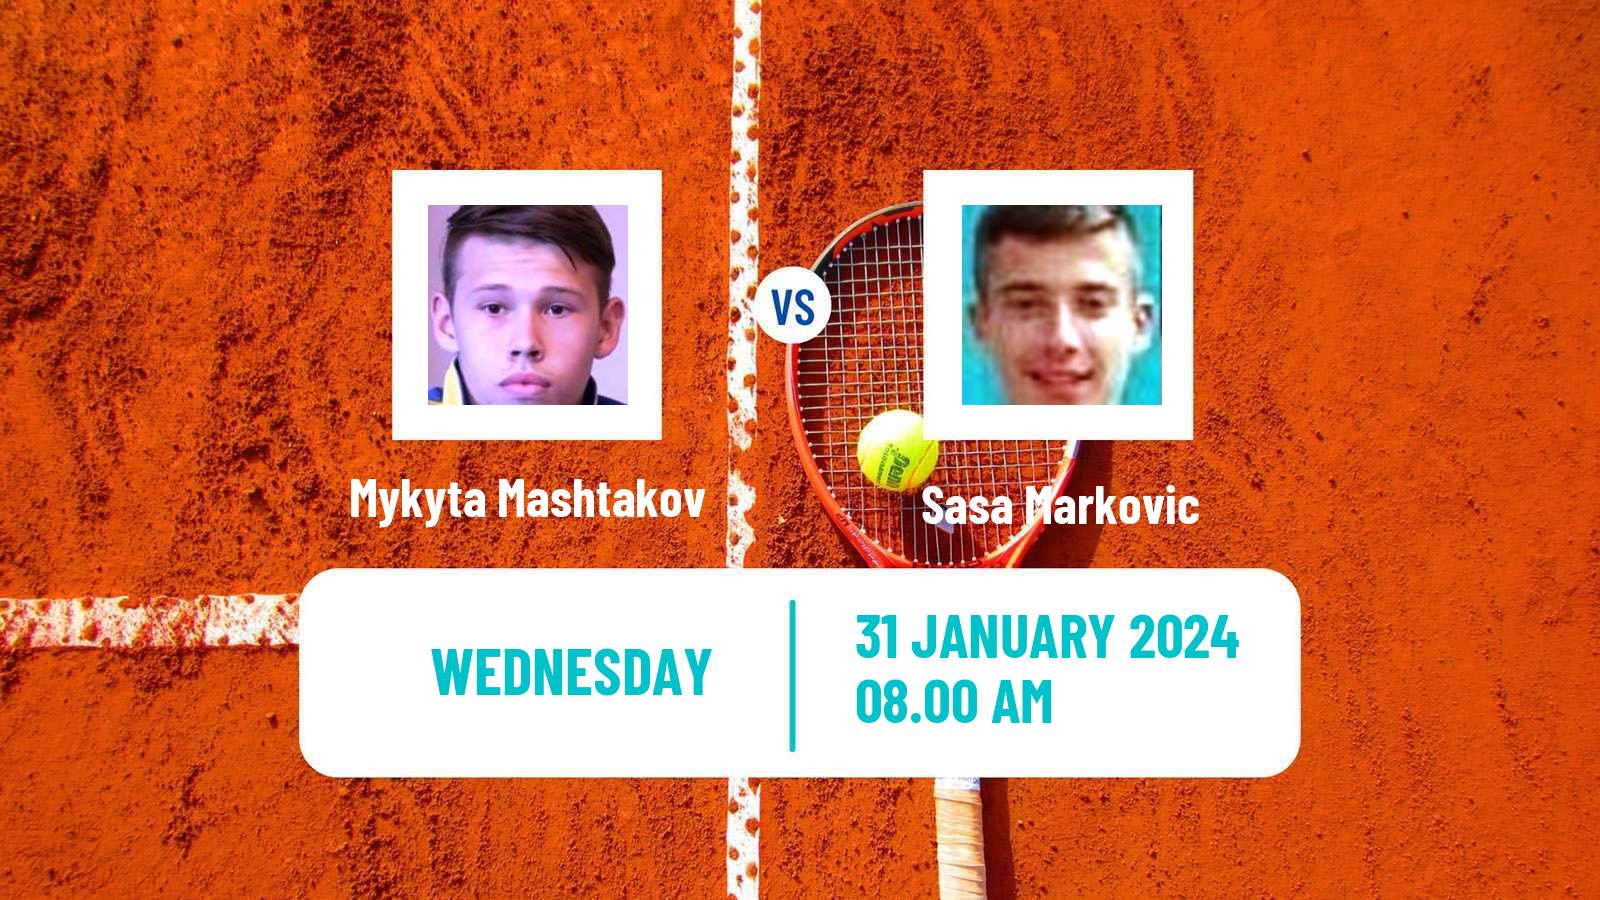 Tennis ITF M25 Antalya Men Mykyta Mashtakov - Sasa Markovic